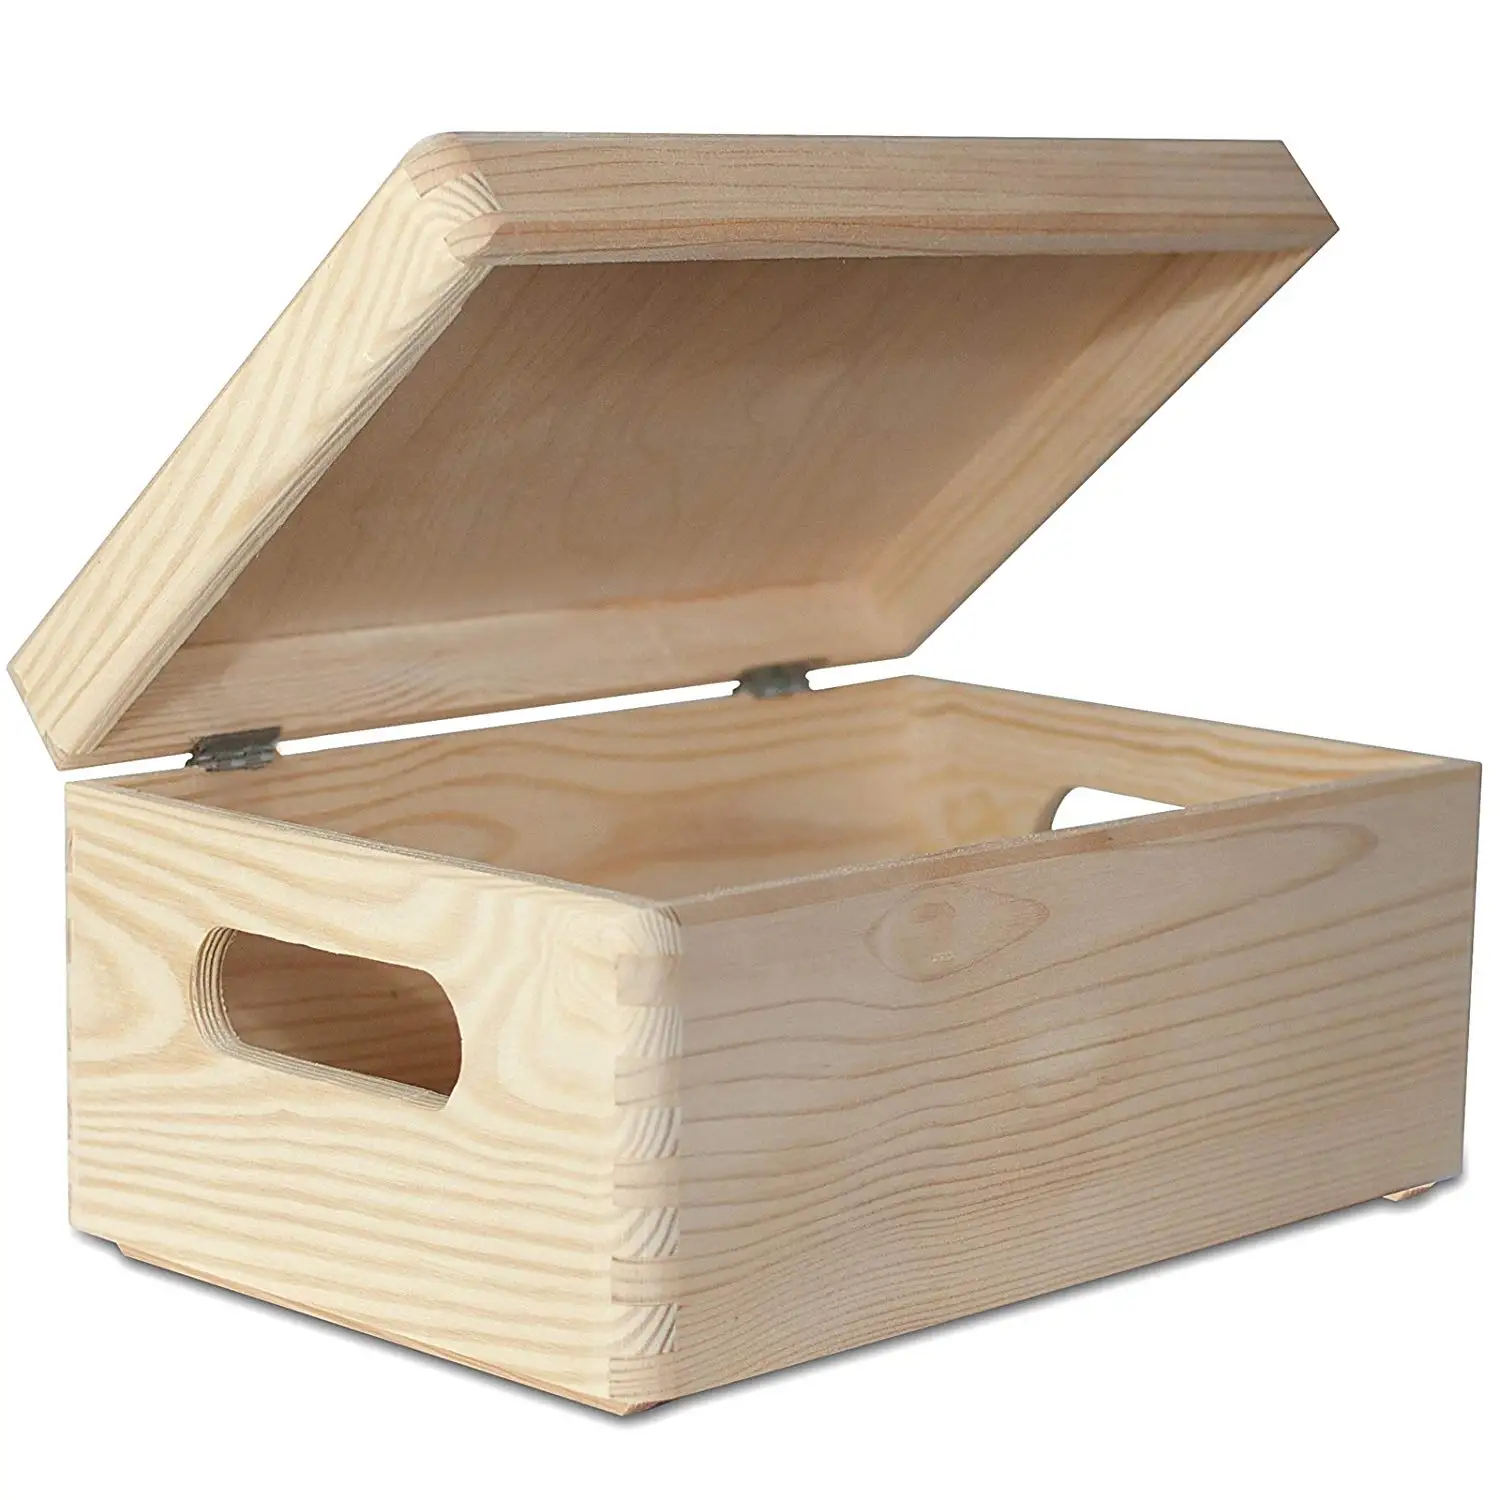 large plain wooden boxes